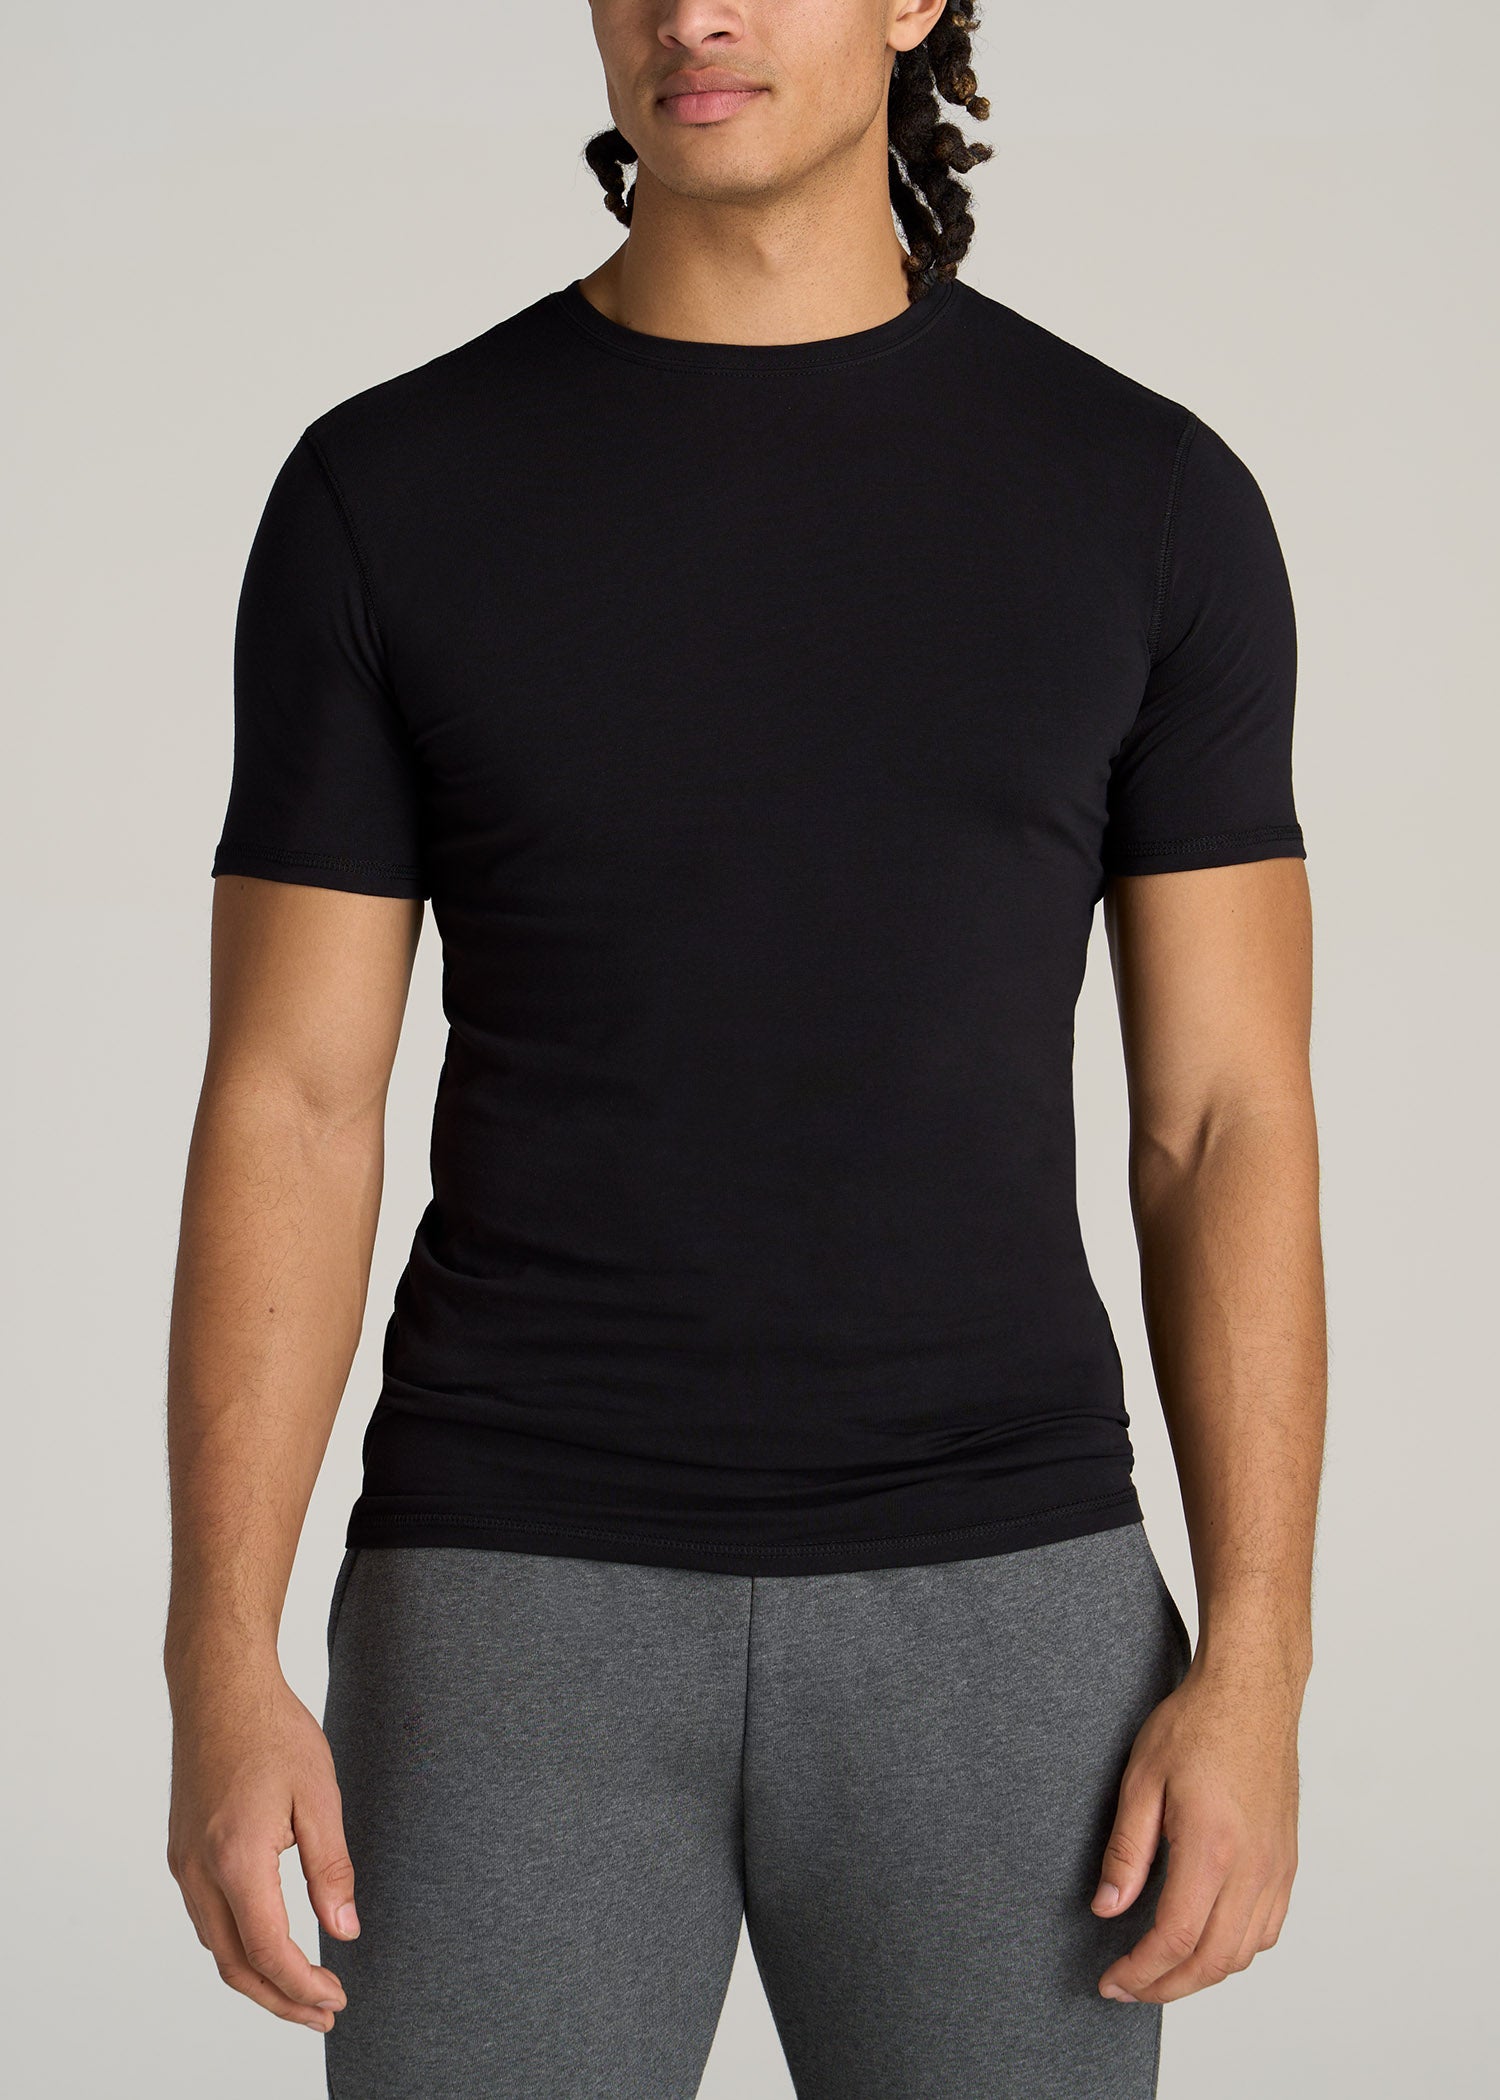 Slim Fit Black T-Shirt | Tall Men\'s Essentials | American Tall